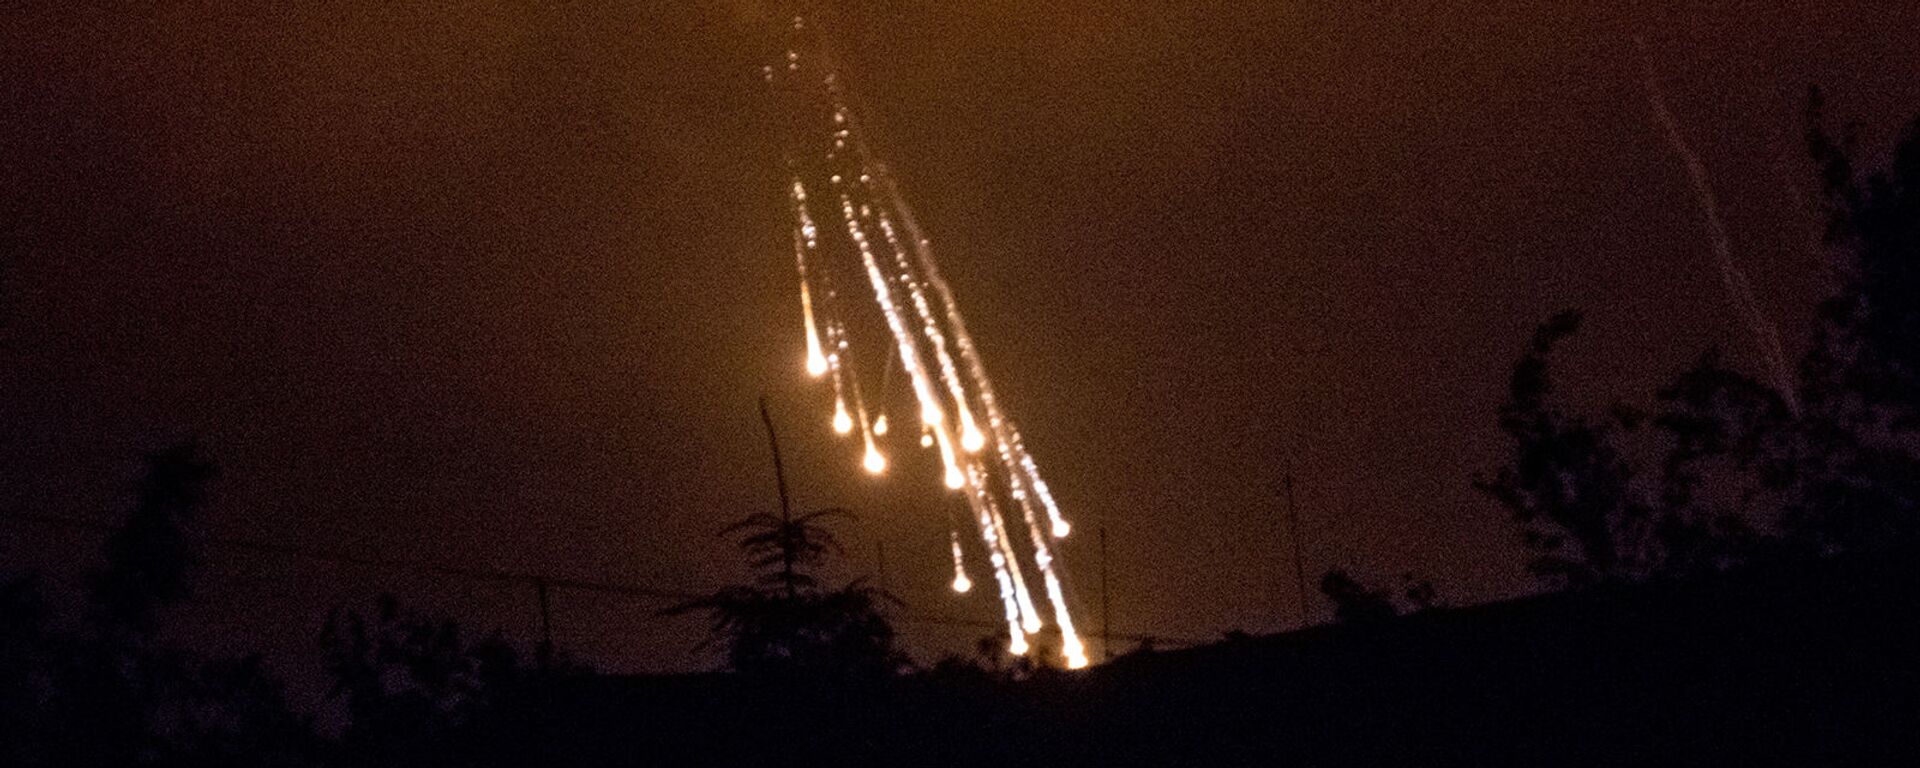 Украинские военные стреляют фосфорными зажигательными снарядами по поселку Сeменовка (11 июня 2014). - Sputnik Արմենիա, 1920, 03.11.2020